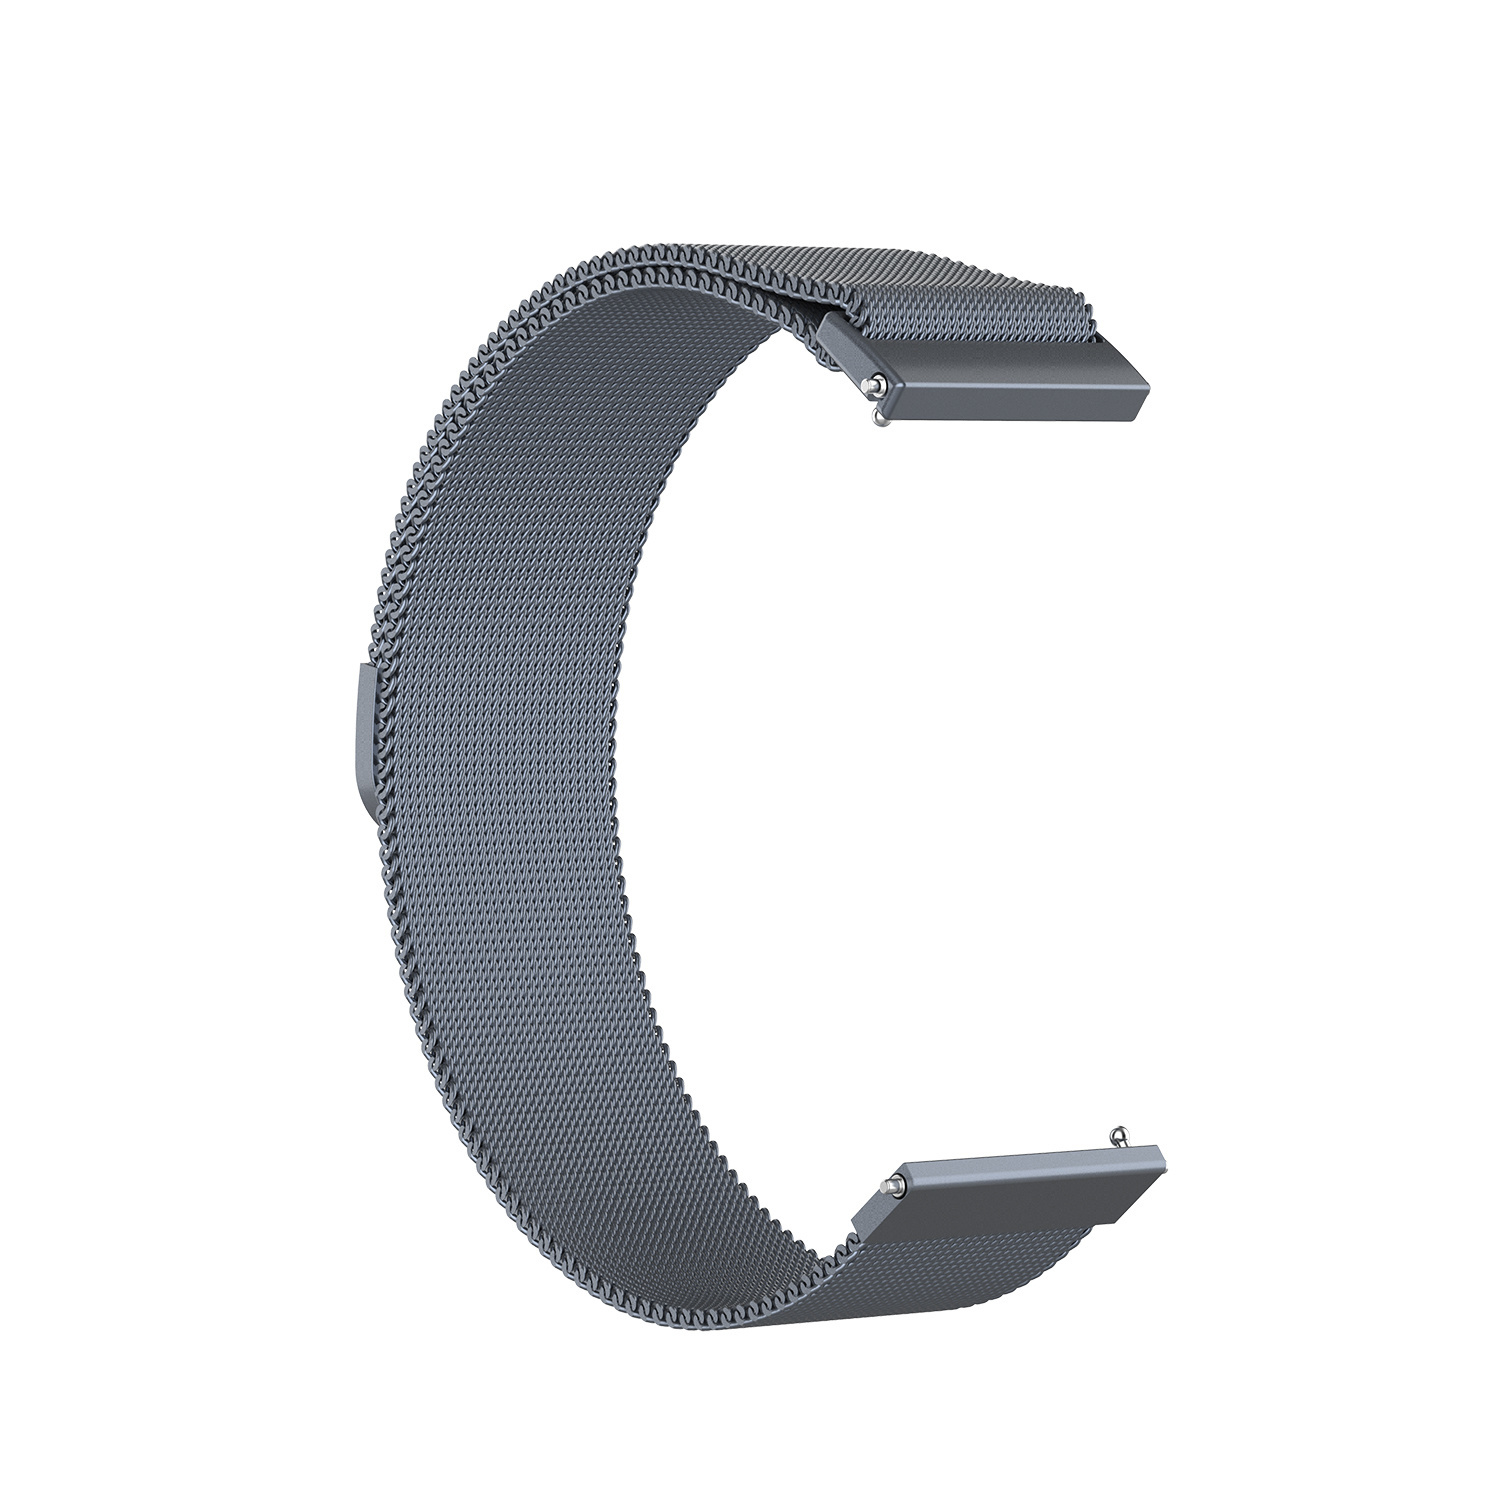 Correa Milanese loop para el Samsung Galaxy Watch - gris espacial